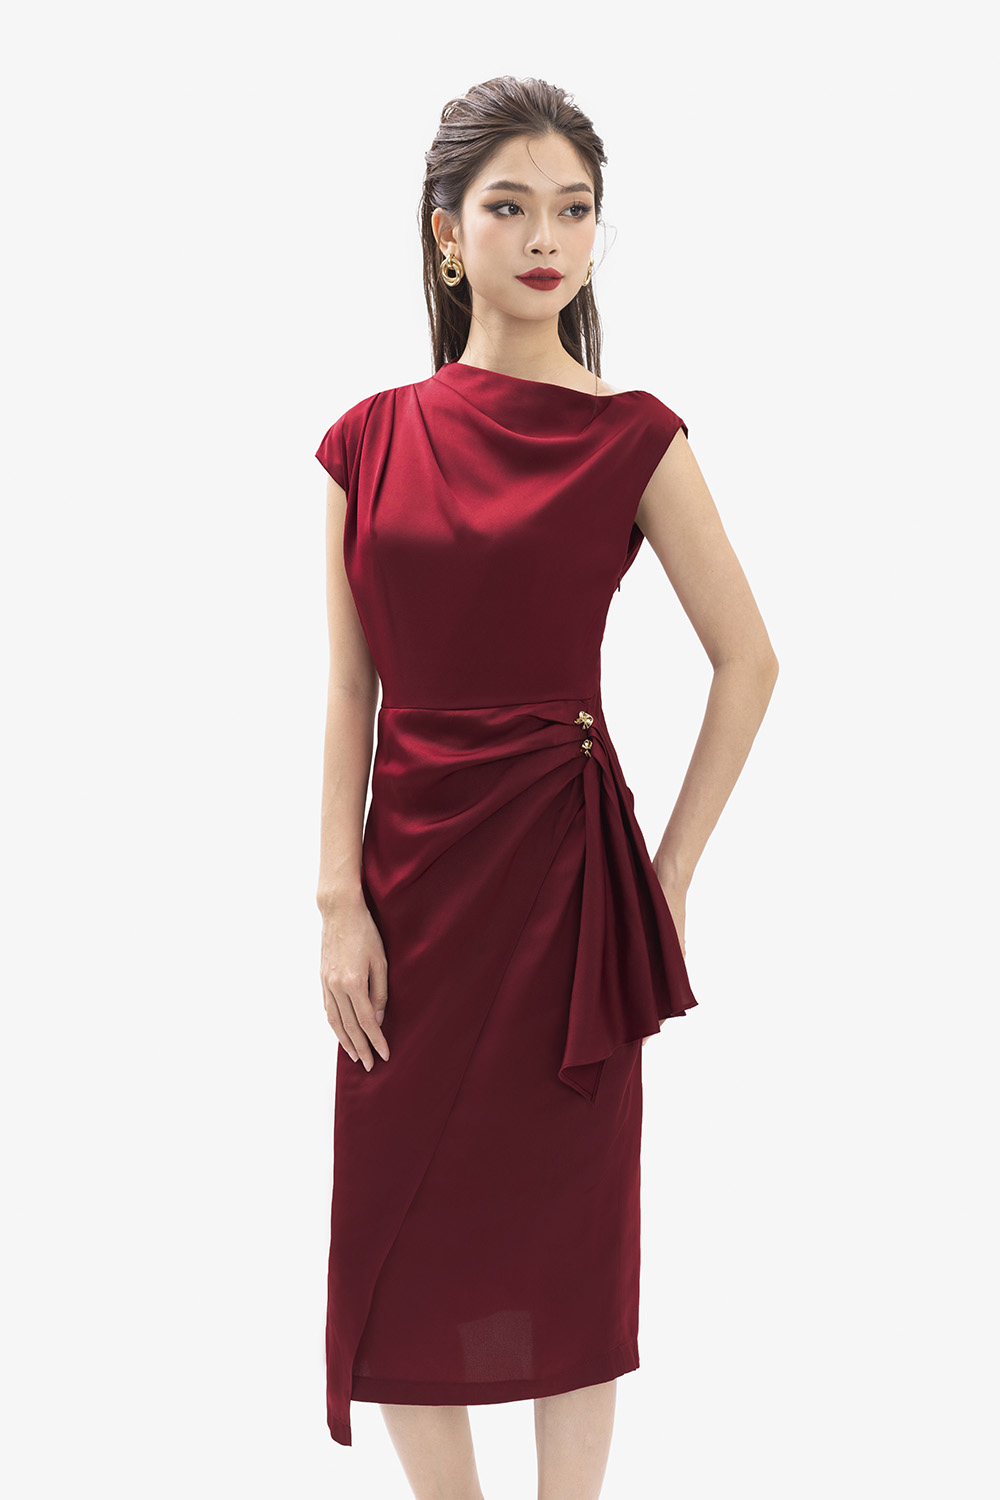 Đầm đỏ dự tiệc sang chảnh-Hàng cao cấp loại 1-váy đỏ mặc tết,đi chơi noel  siêu xinh | Shopee Việt Nam